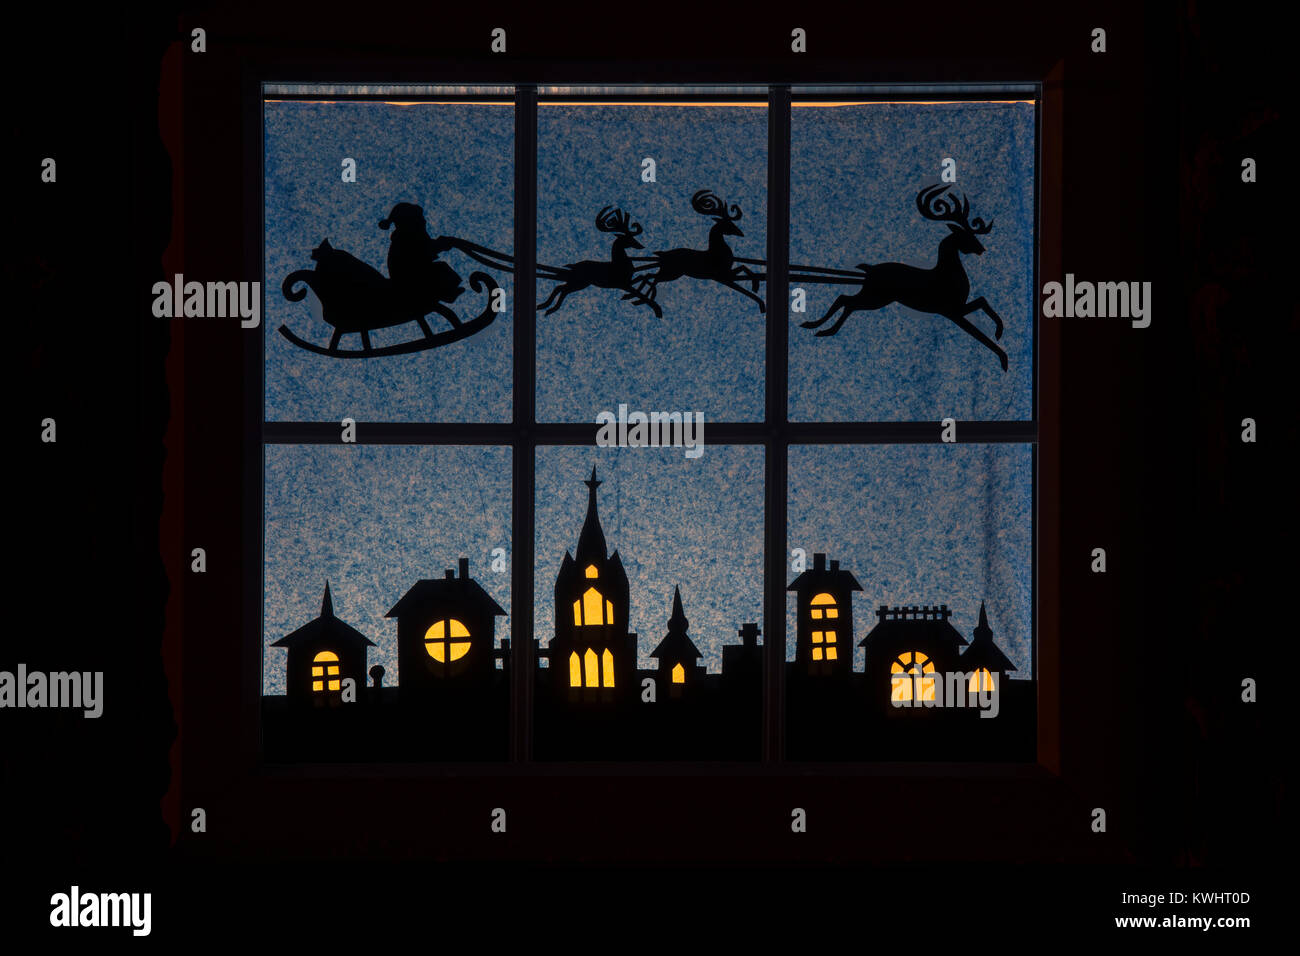 Festliche Weihnachten Weihnachtsmann und Rentier Haus Fenster Silhouette.  Northamptonshire, England Stockfotografie - Alamy